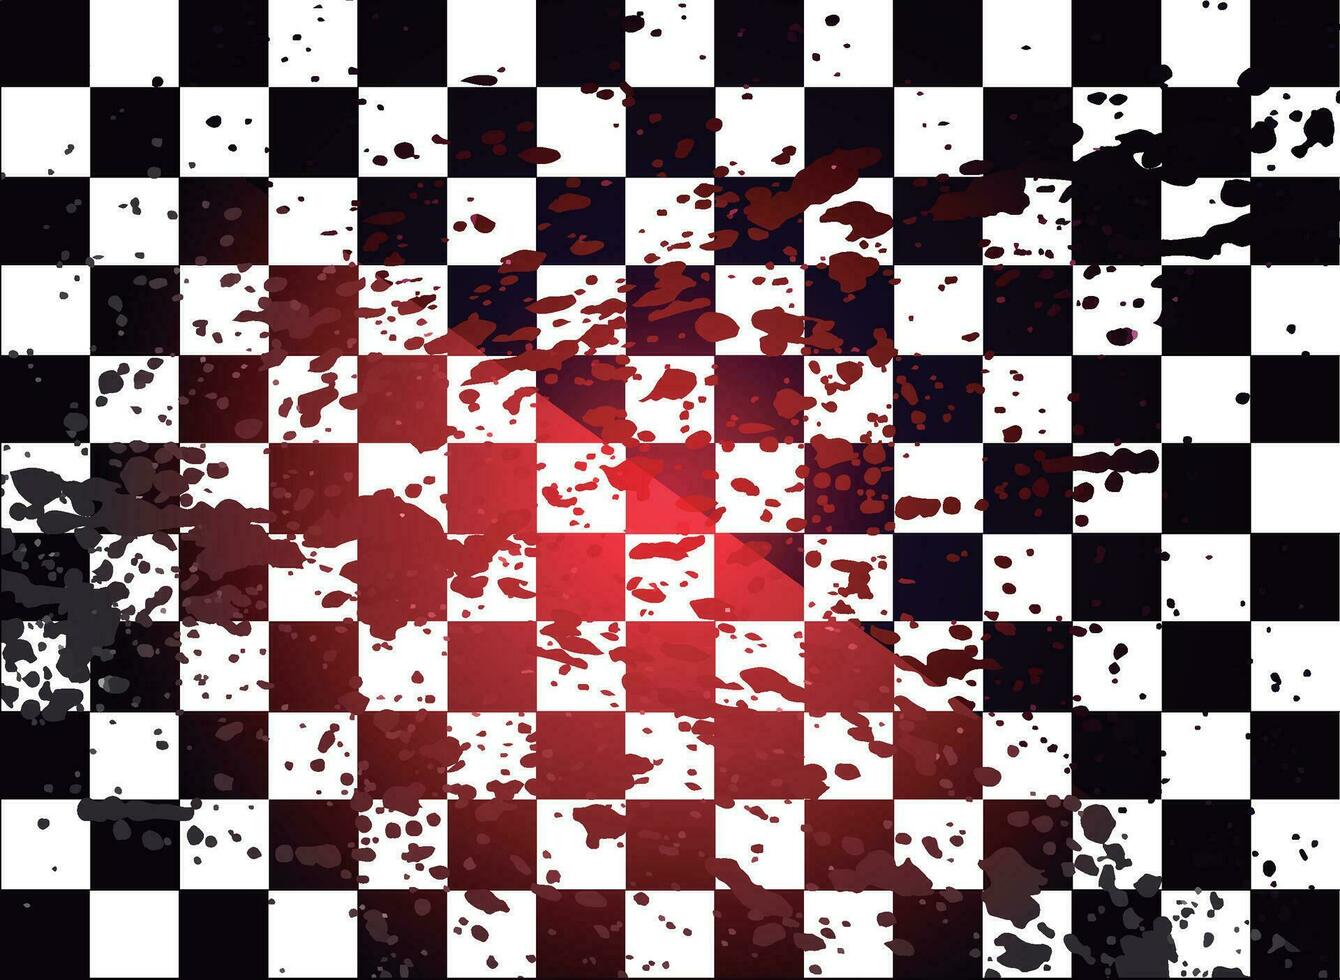 mörk schack - mönster med blod fläckar vektor